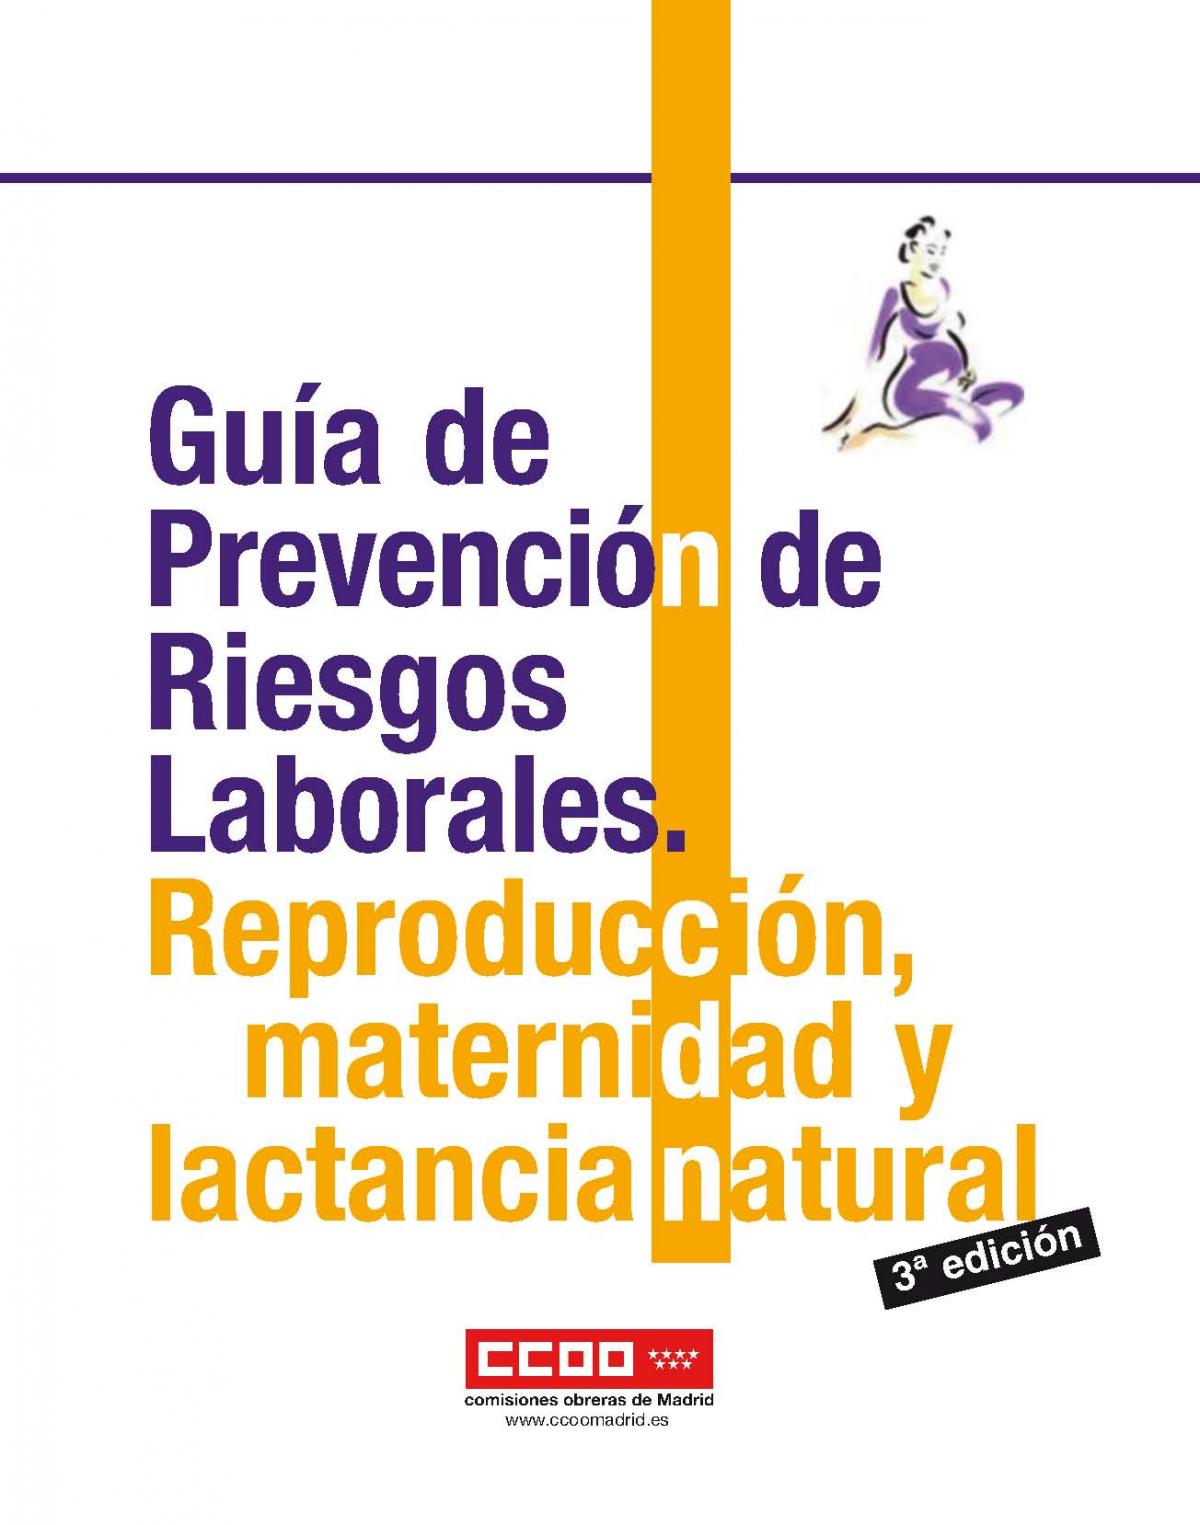 Gu�a de prevenci�n de Riesgos Laborales. Reproducci�n, maternidad y lactancia natural